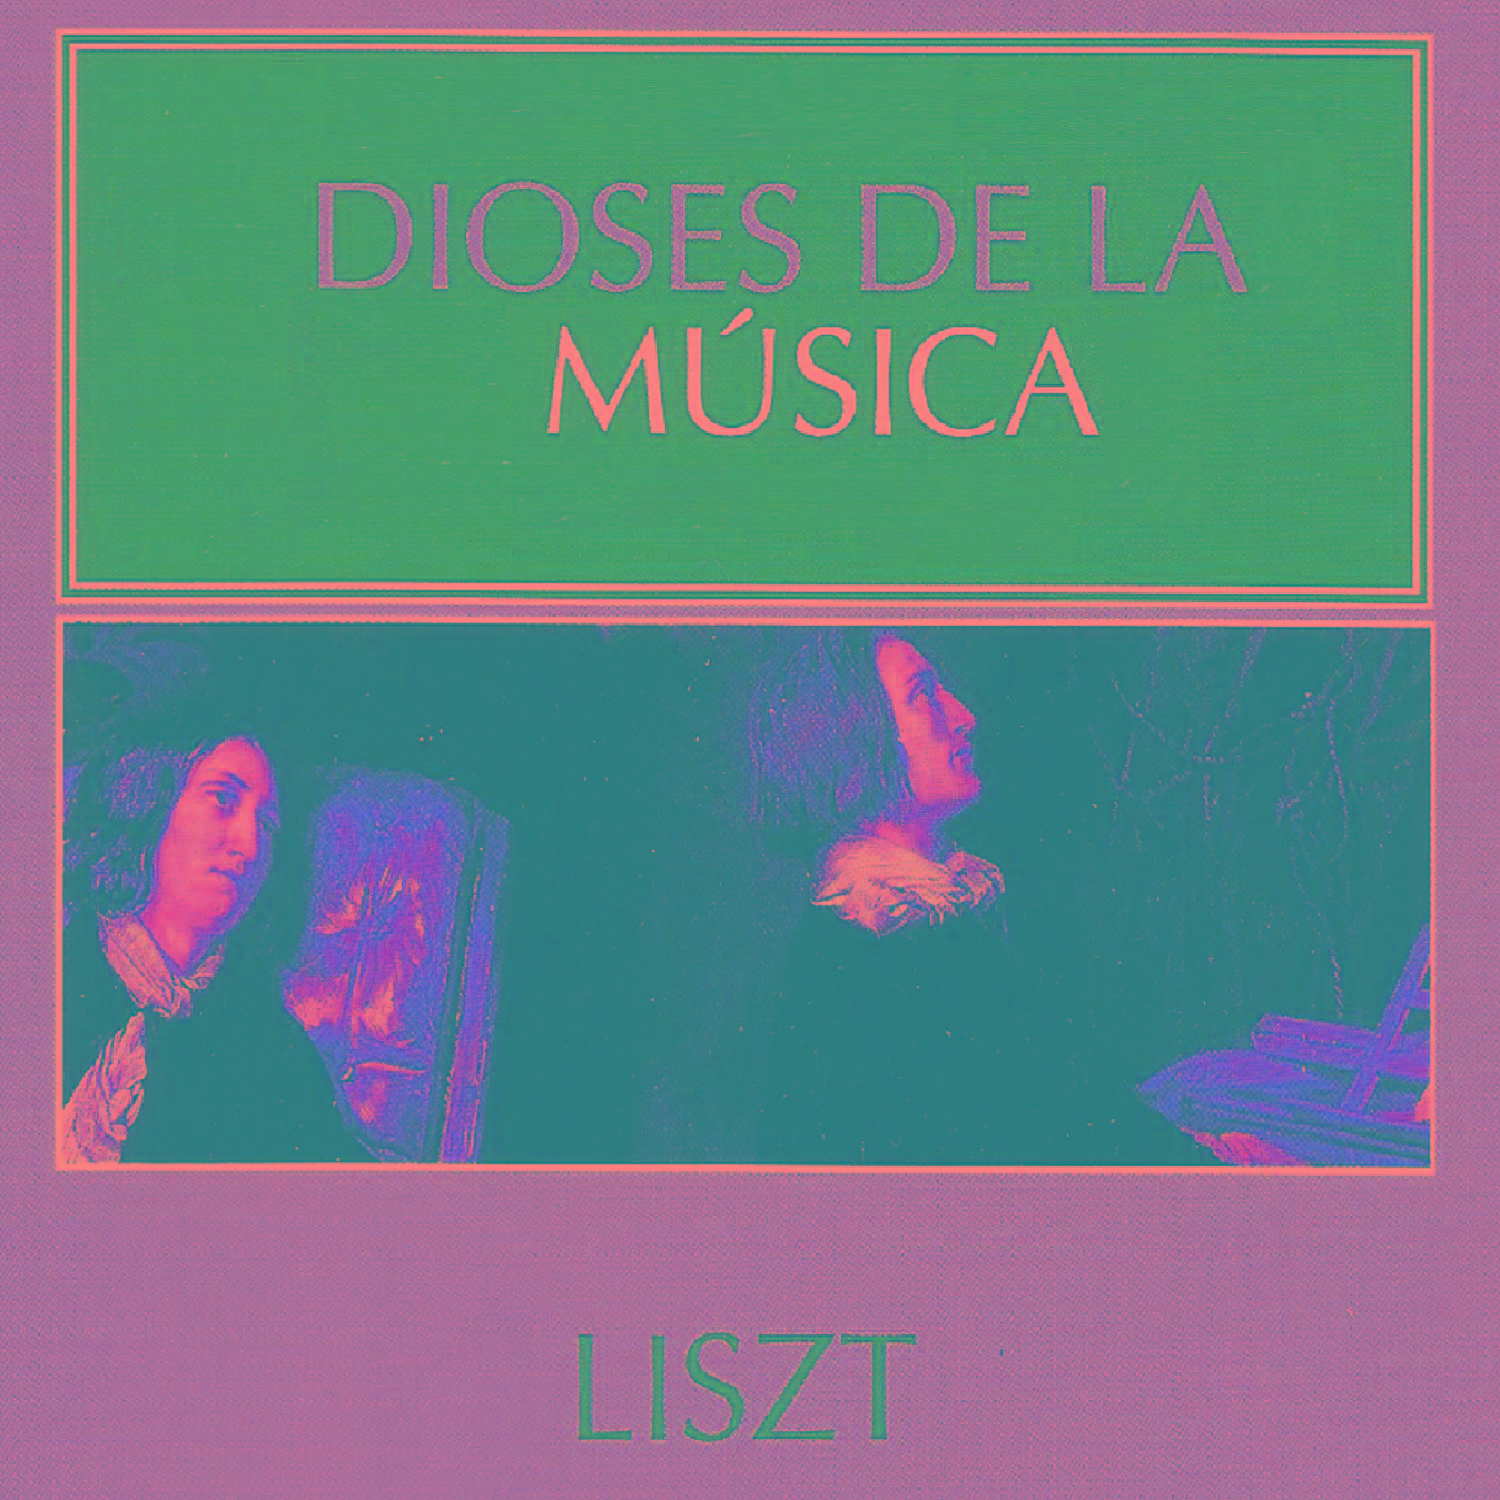 Dioses de la Música - Liszt专辑